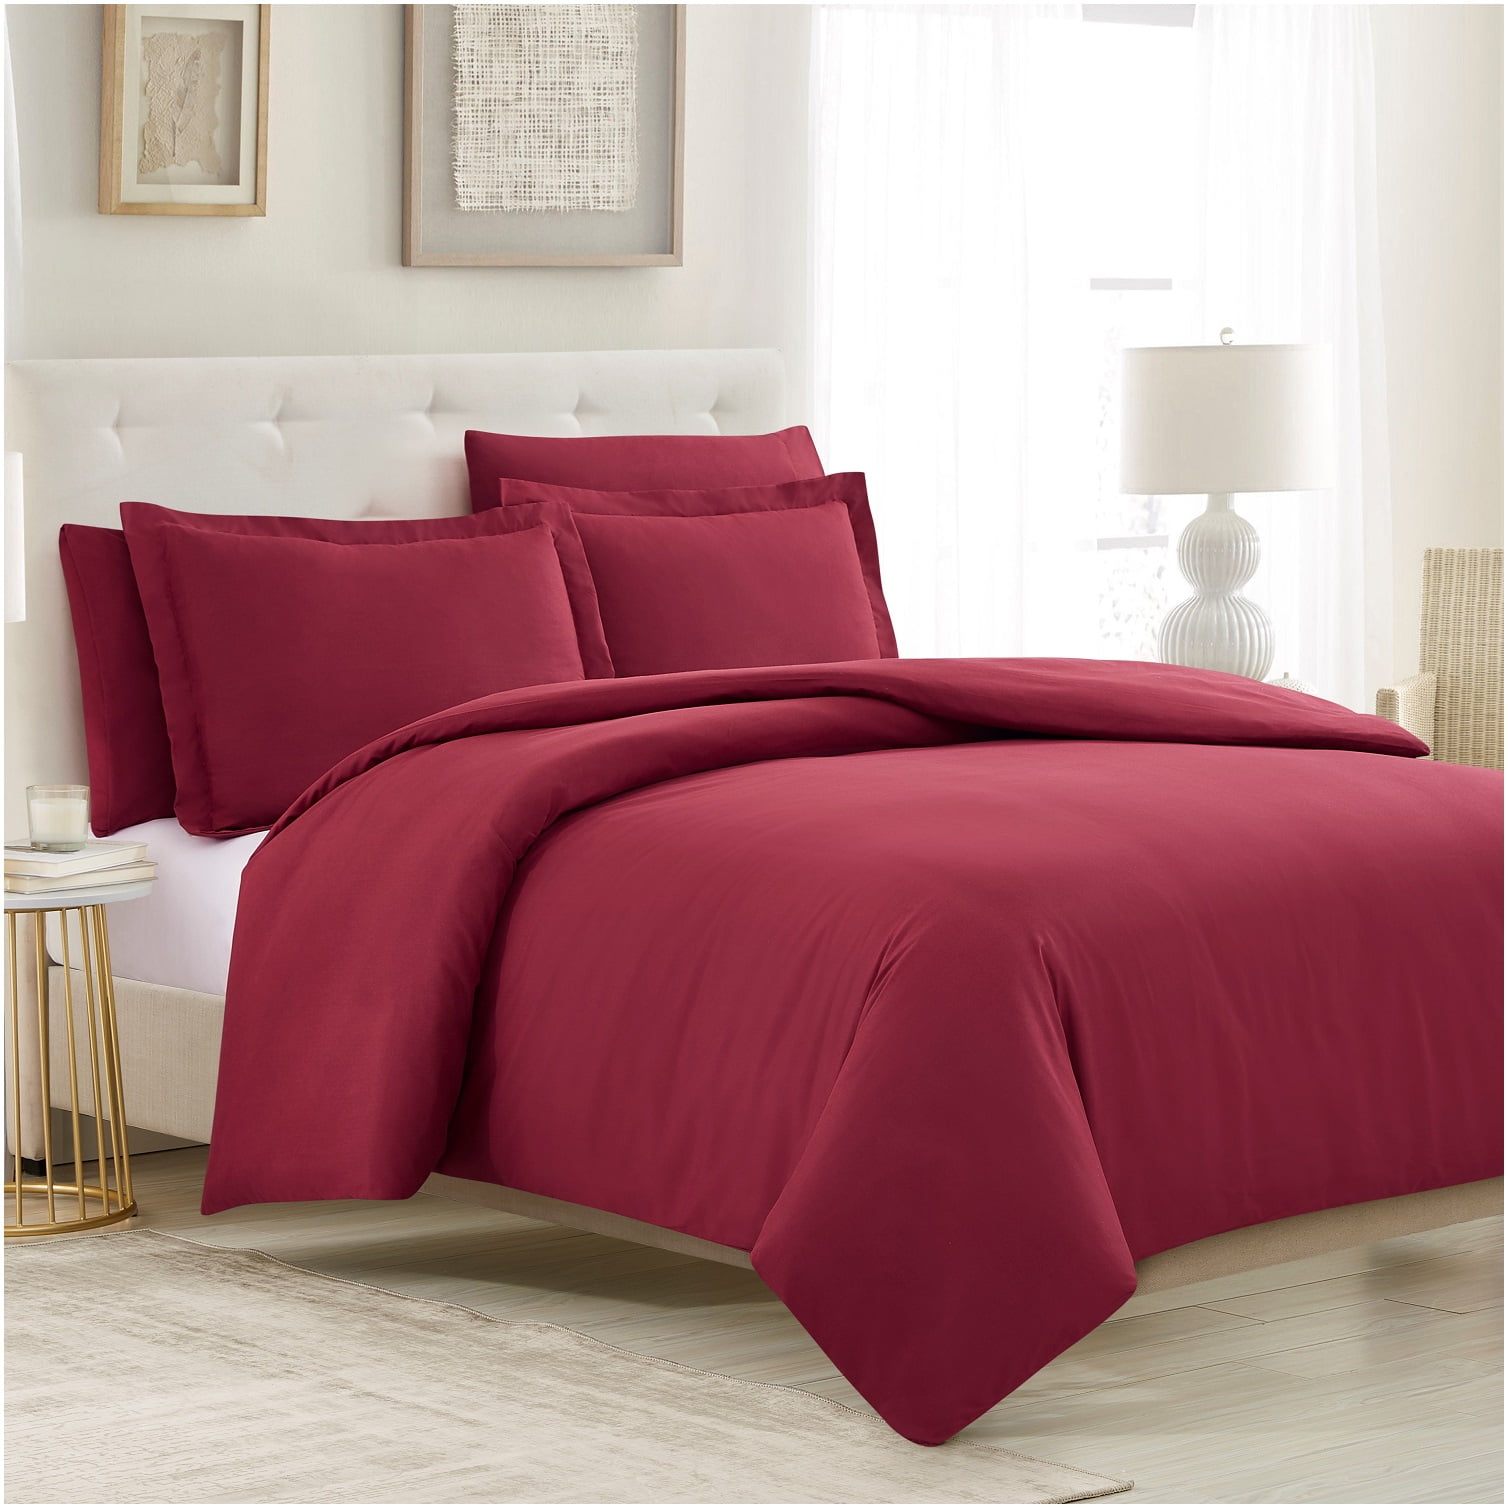 Full Duvet Cover Set Soft Brushed Comforter Cover W/Pillow Sham Burgundy 